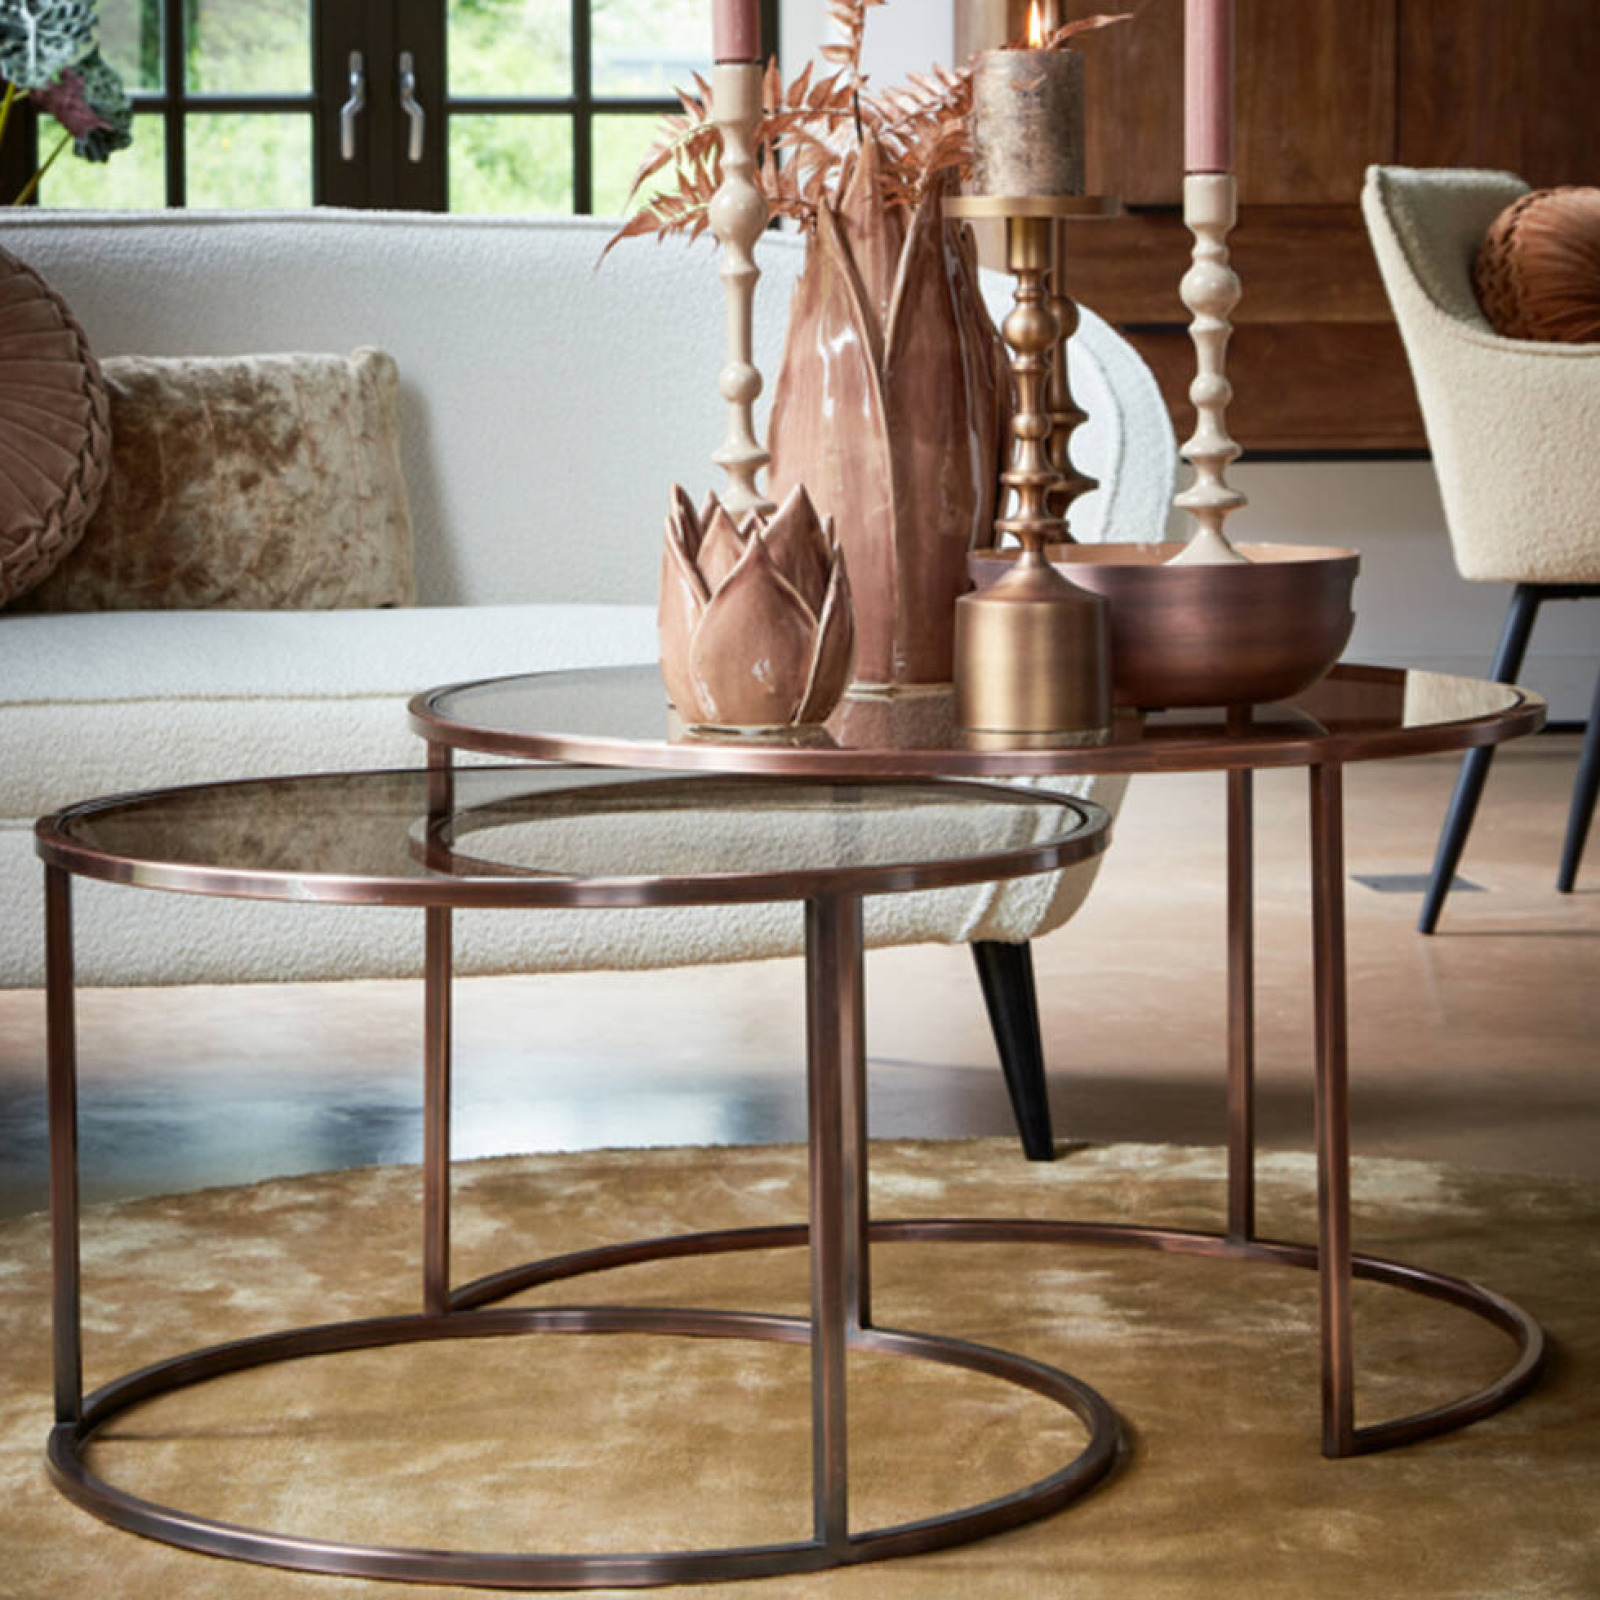 Duarte antique copper coffe table set